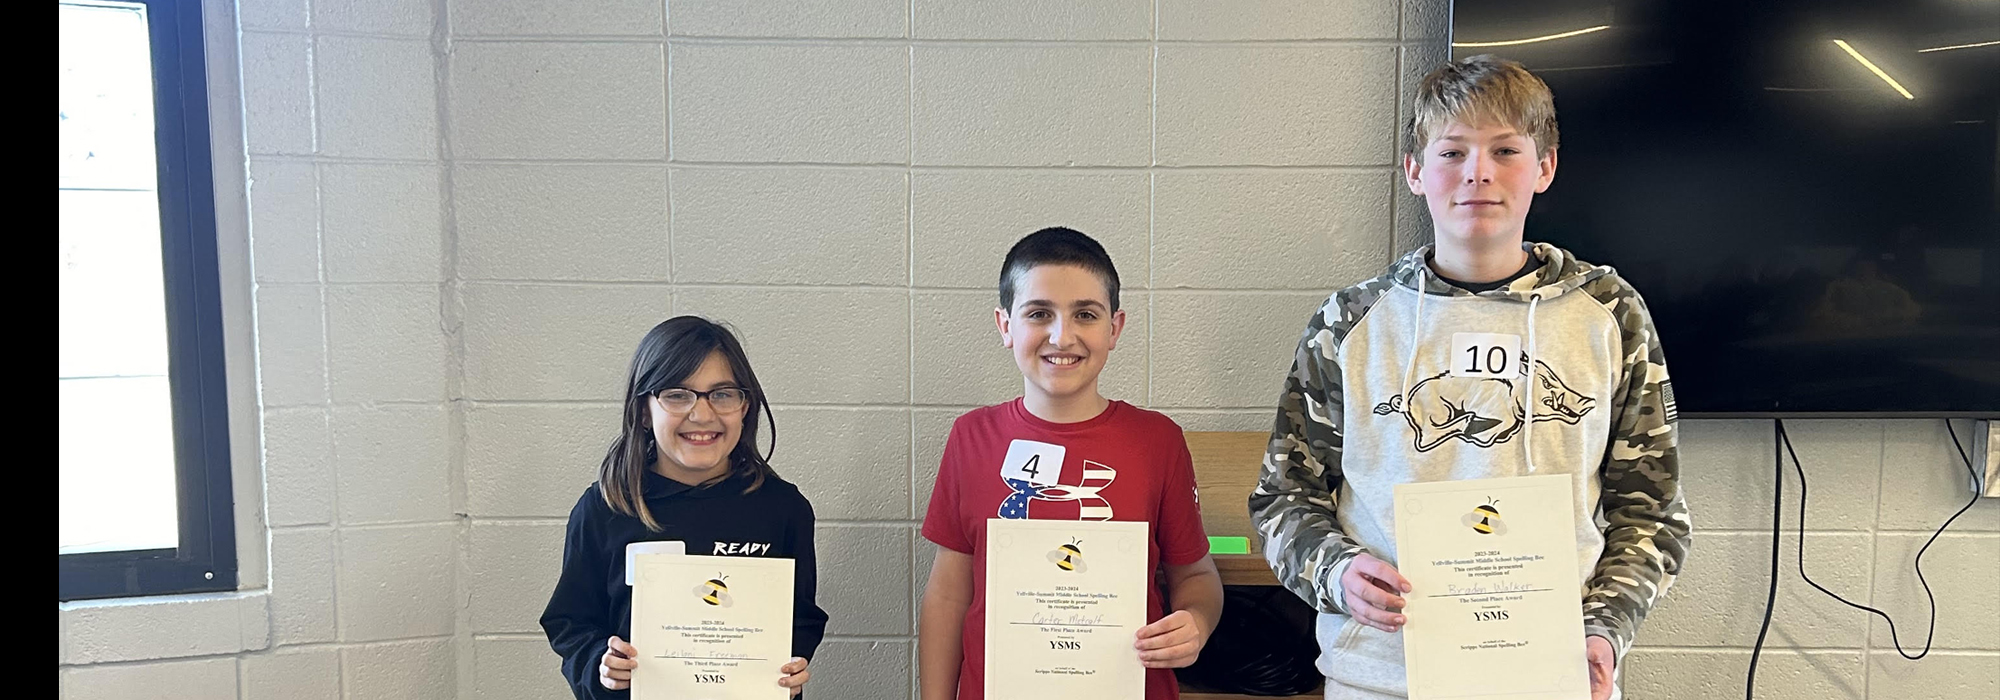 Middle School Spelling Bee Winners